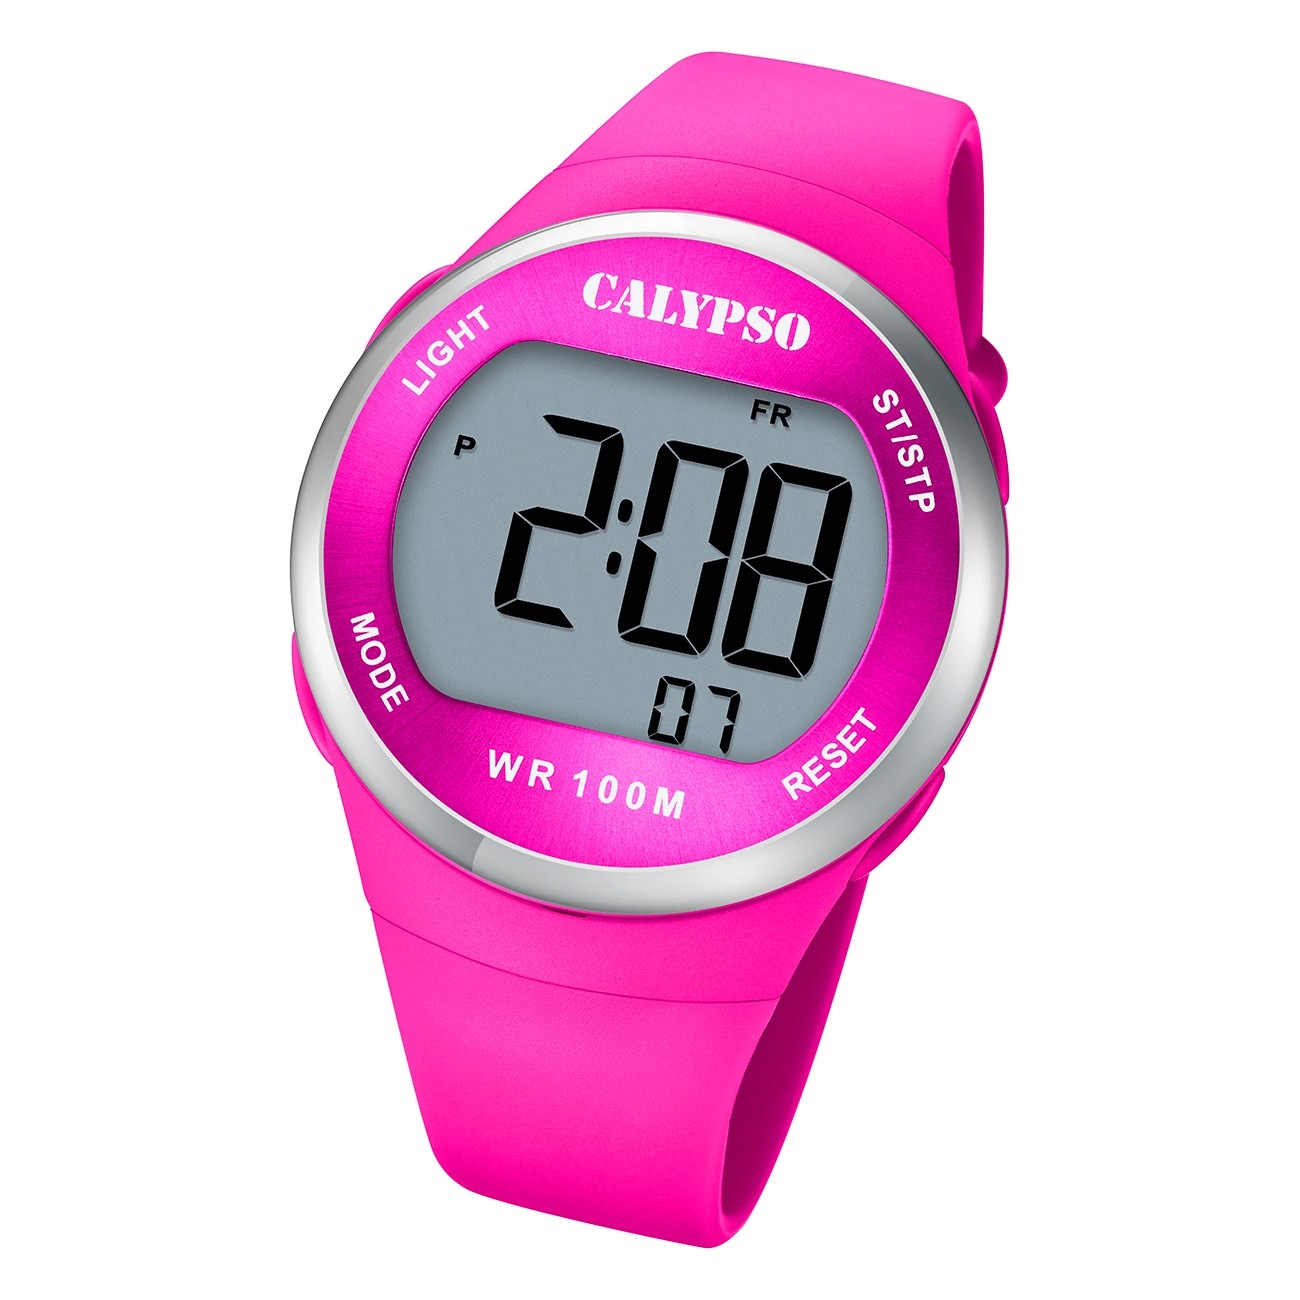 Calypso Damen Jugend Armbanduhr Outdoor K5786/5 Digital Kunststoff pink UK5786/5